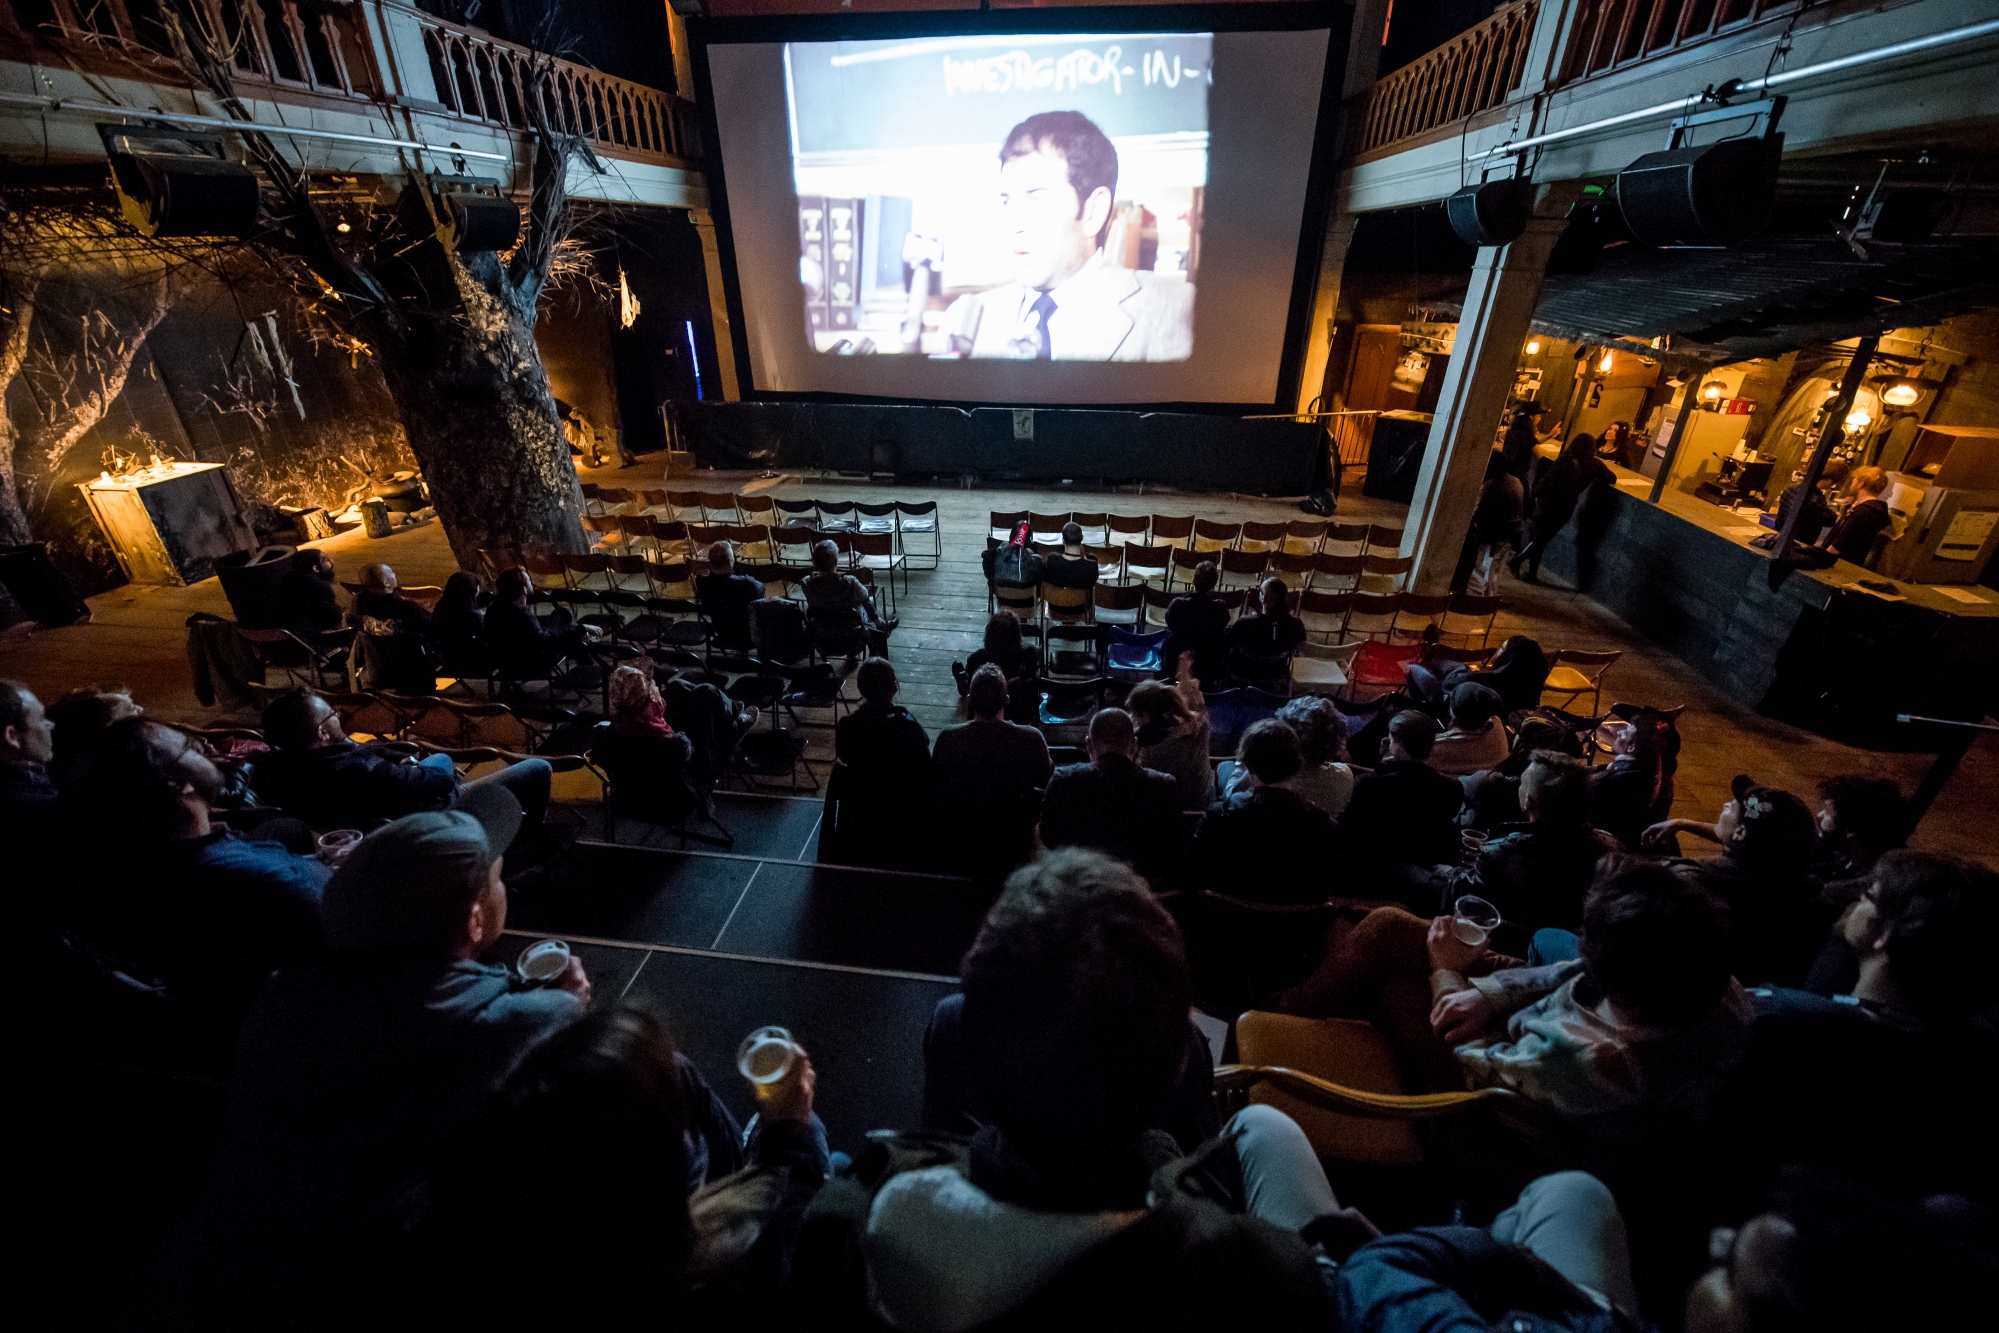 Les Etranges nuits du cinema 19e édition. La Chaux-de-Fonds, le 30 mars 2018 Photo: Lucas Vuitel